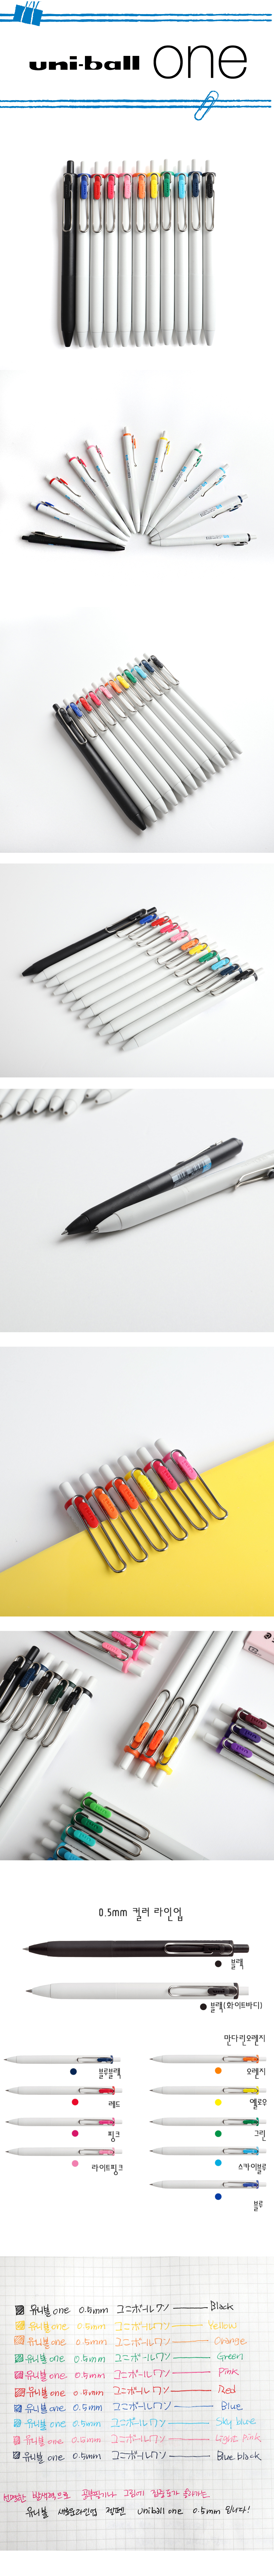 유니볼 ONE 젤잉크펜 0.5mm  1,500원 - 제이펜즈 디자인문구, 필기류, 수성/중성펜, 0.5 바보사랑 유니볼 ONE 젤잉크펜 0.5mm  1,500원 - 제이펜즈 디자인문구, 필기류, 수성/중성펜, 0.5 바보사랑